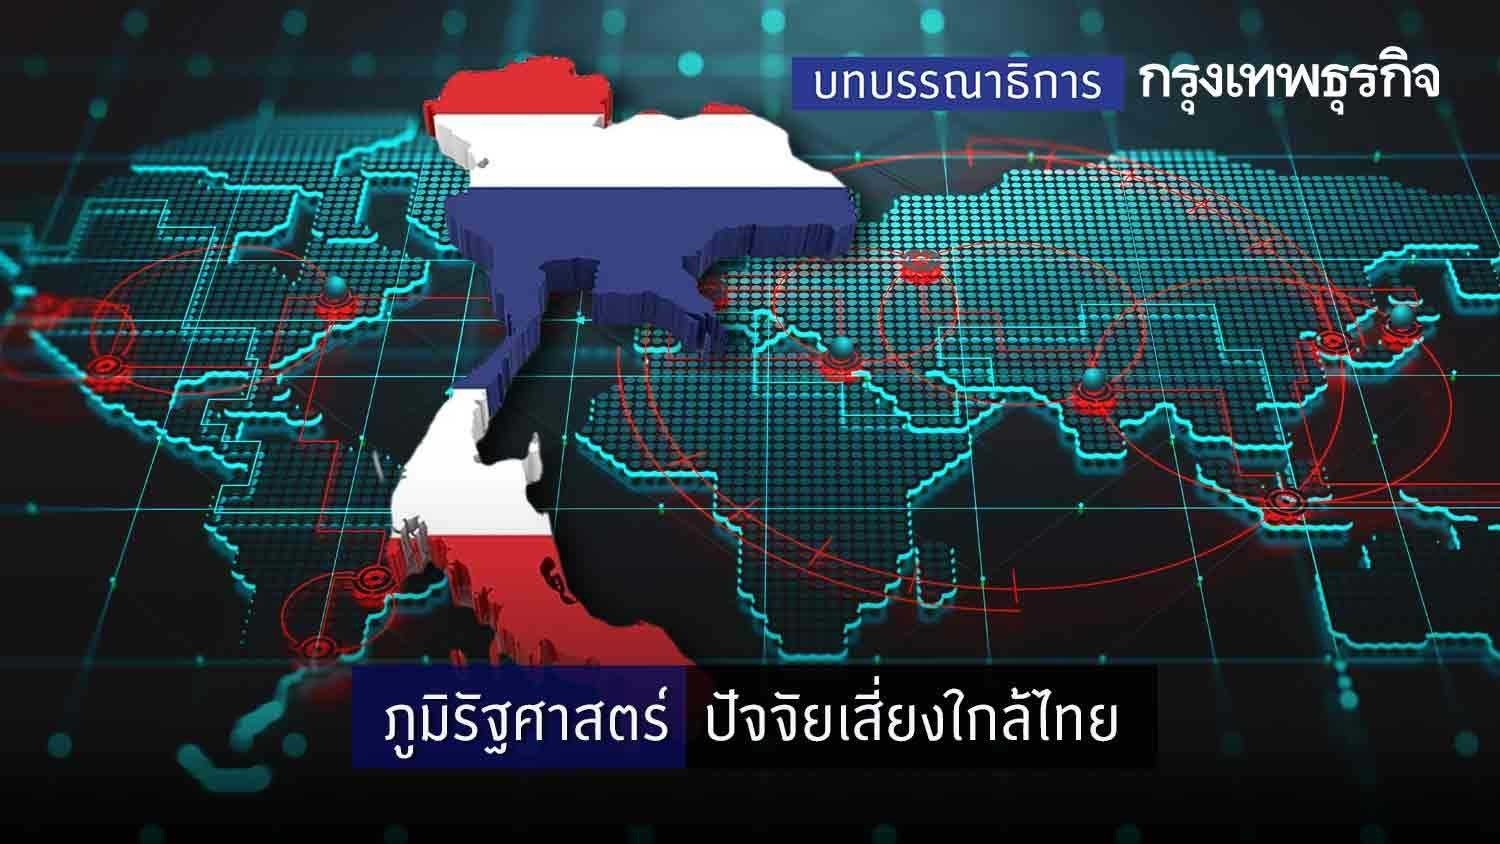 ภูมิรัฐศาสตร์ ปัจจัยเสี่ยงใกล้ไทย